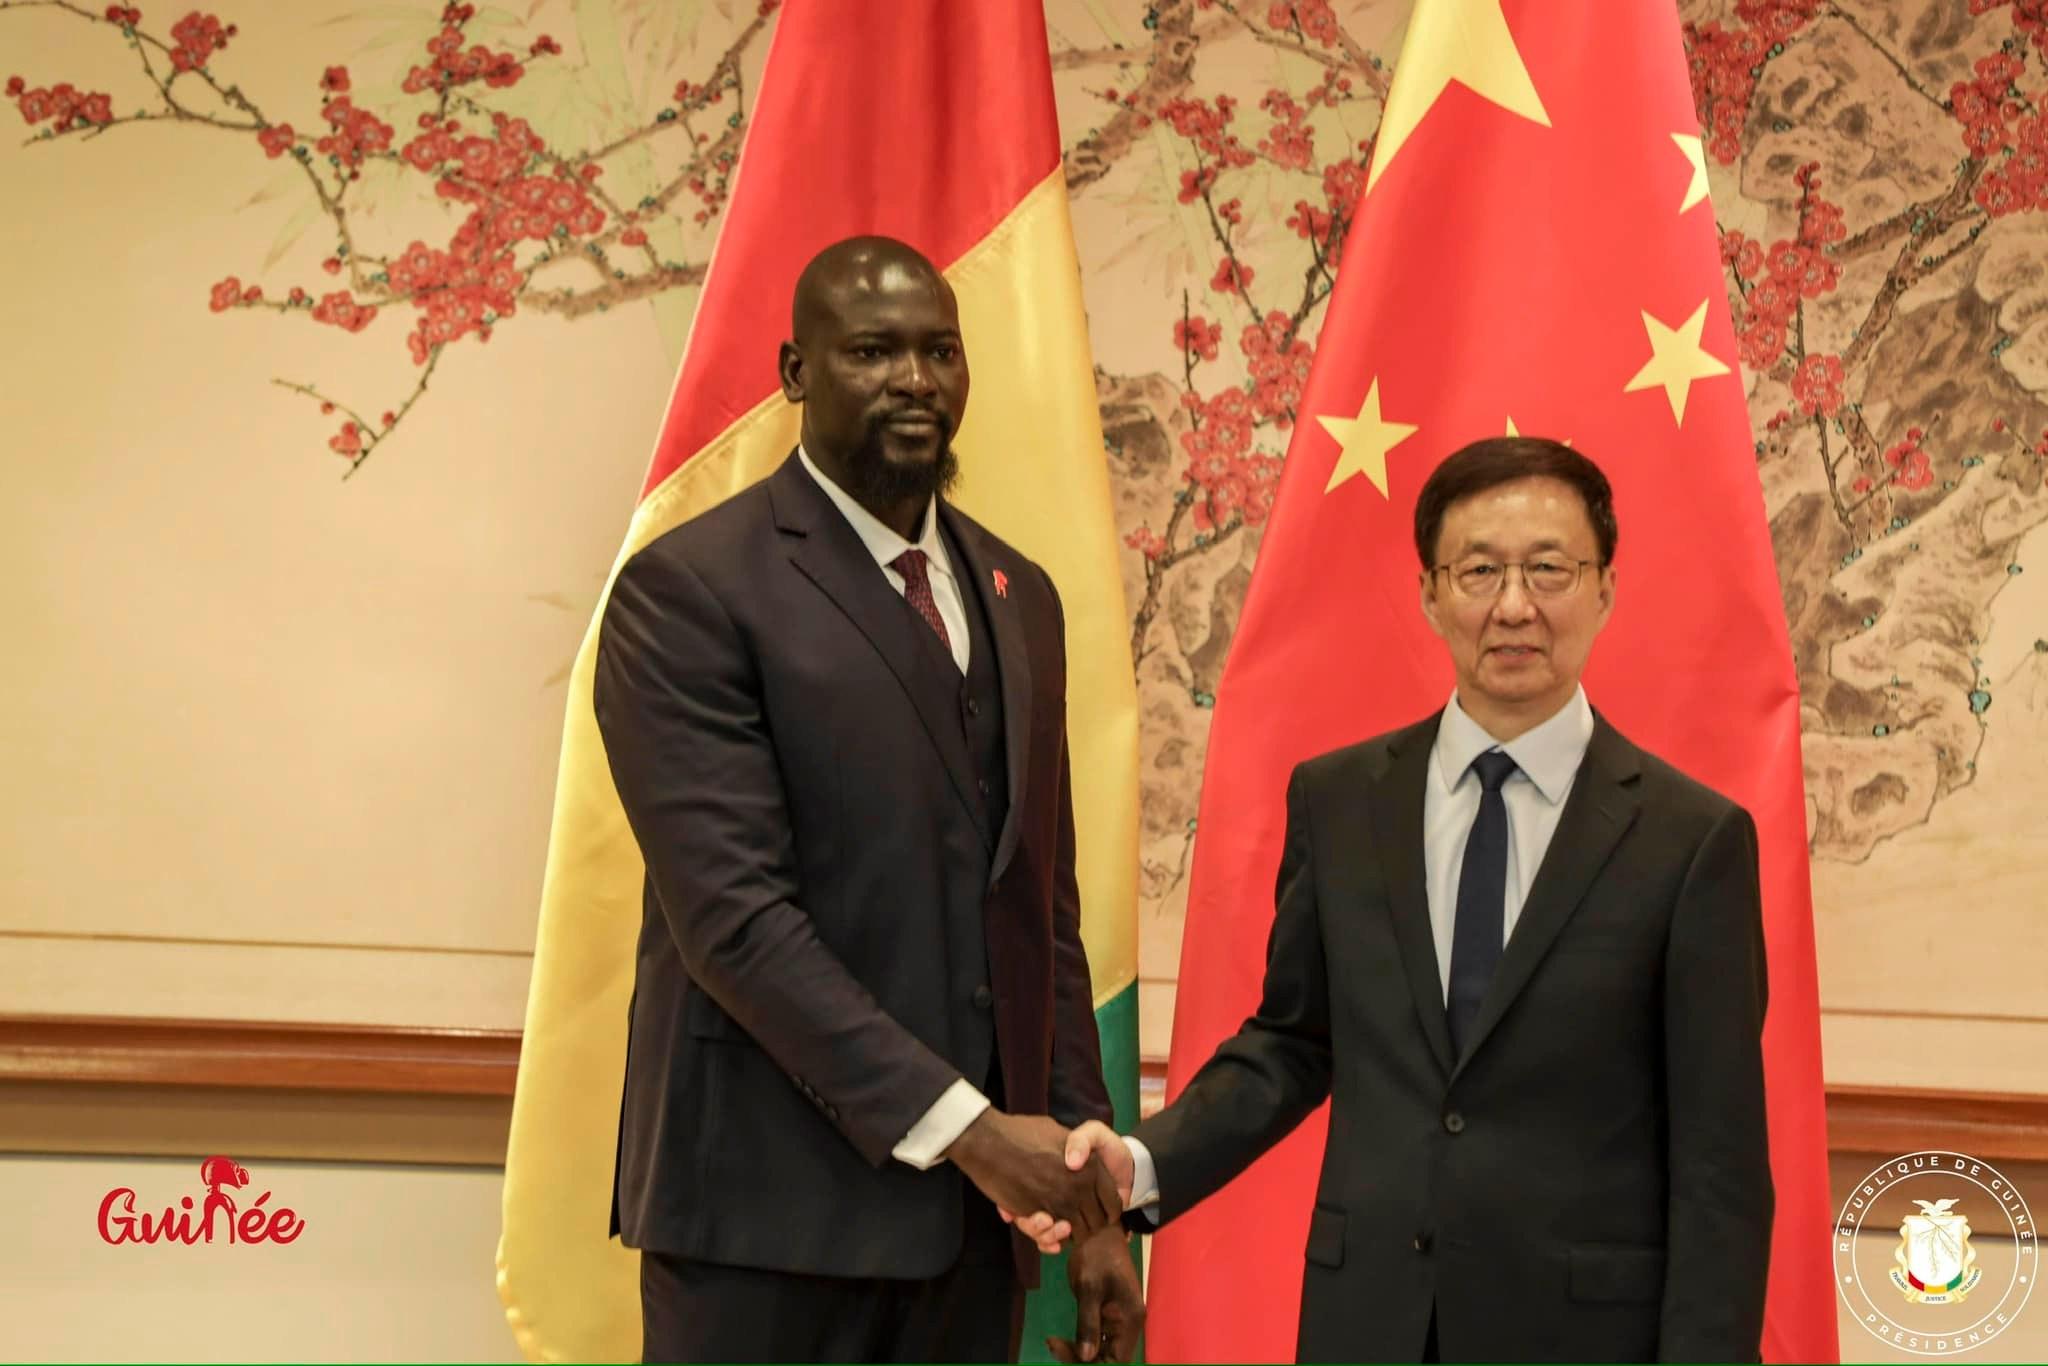 Tête-à-tête Doumbouya- Vice président Chinois à New York : voici les dessous d’une rencontre